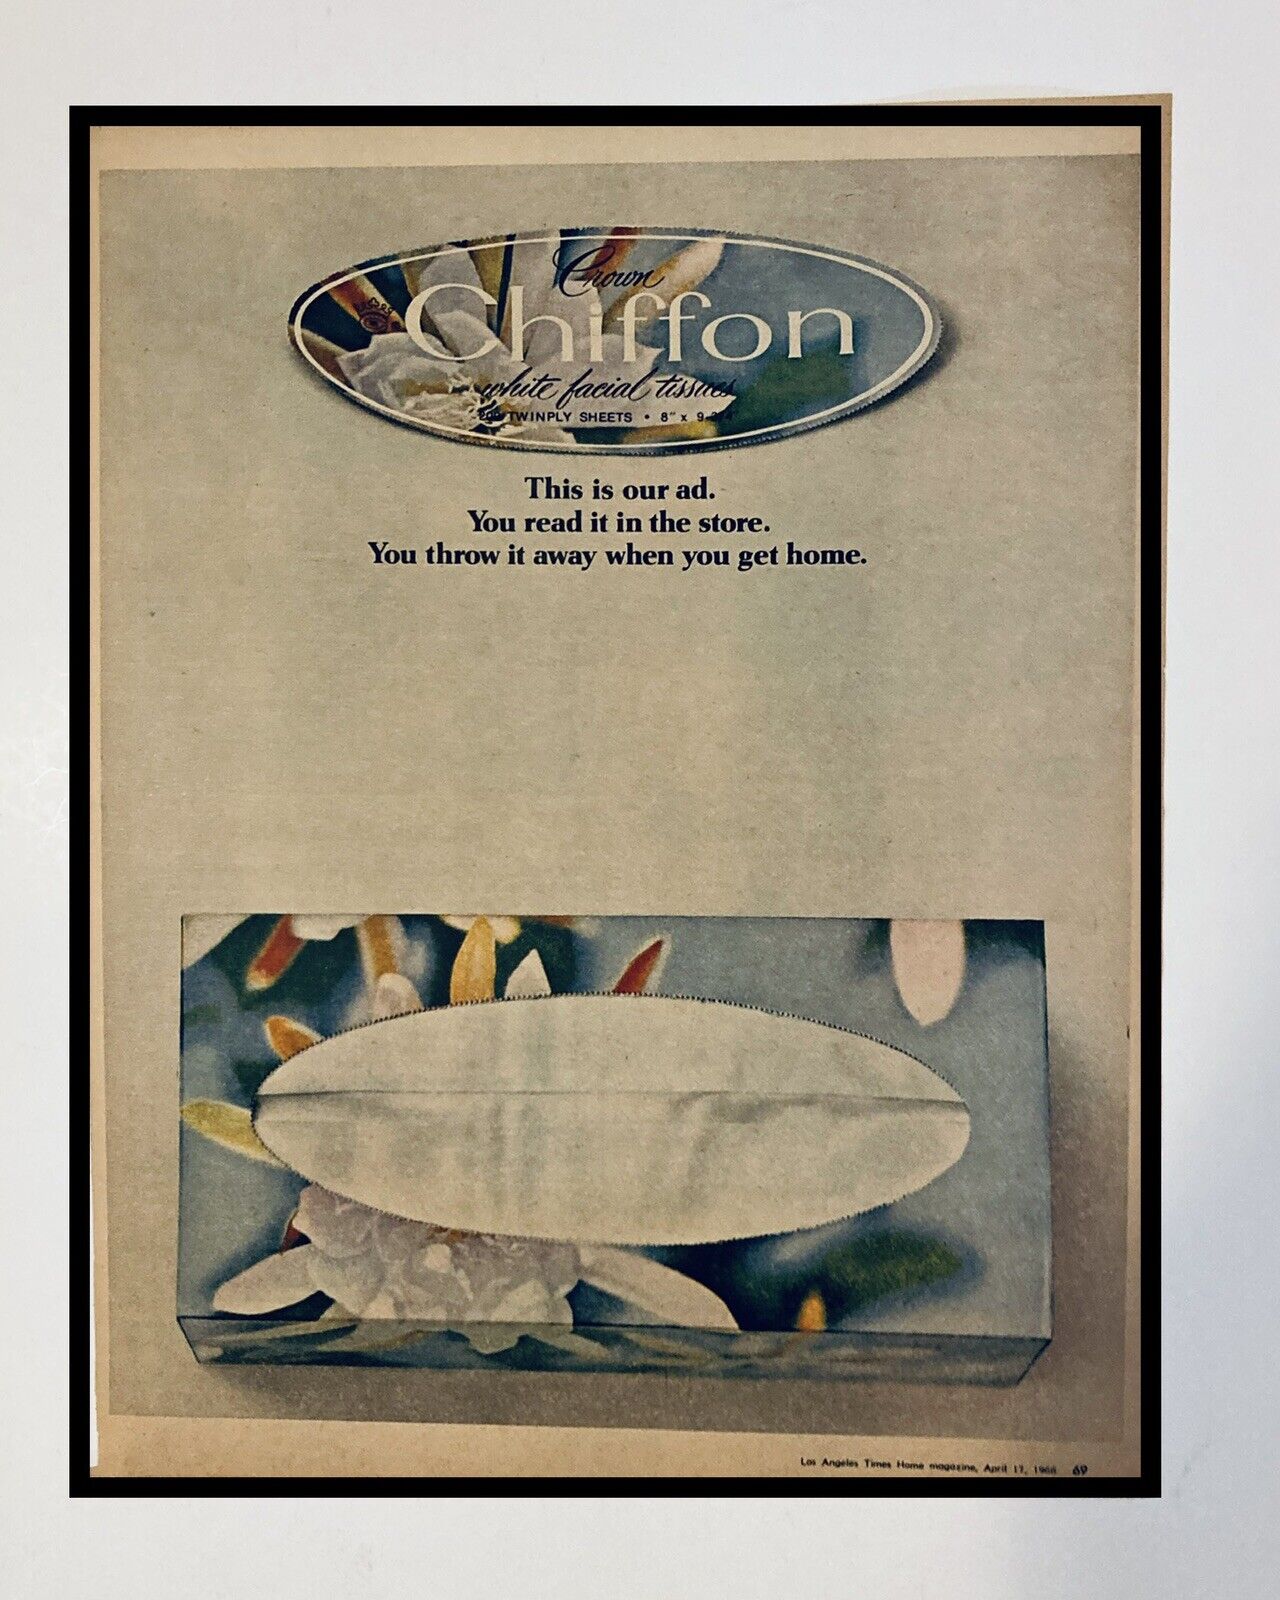 Vtg Chiffon Tissue 1966 Print Ad 10x13 inch 1960s Mod Bathroom Decor Ephemera